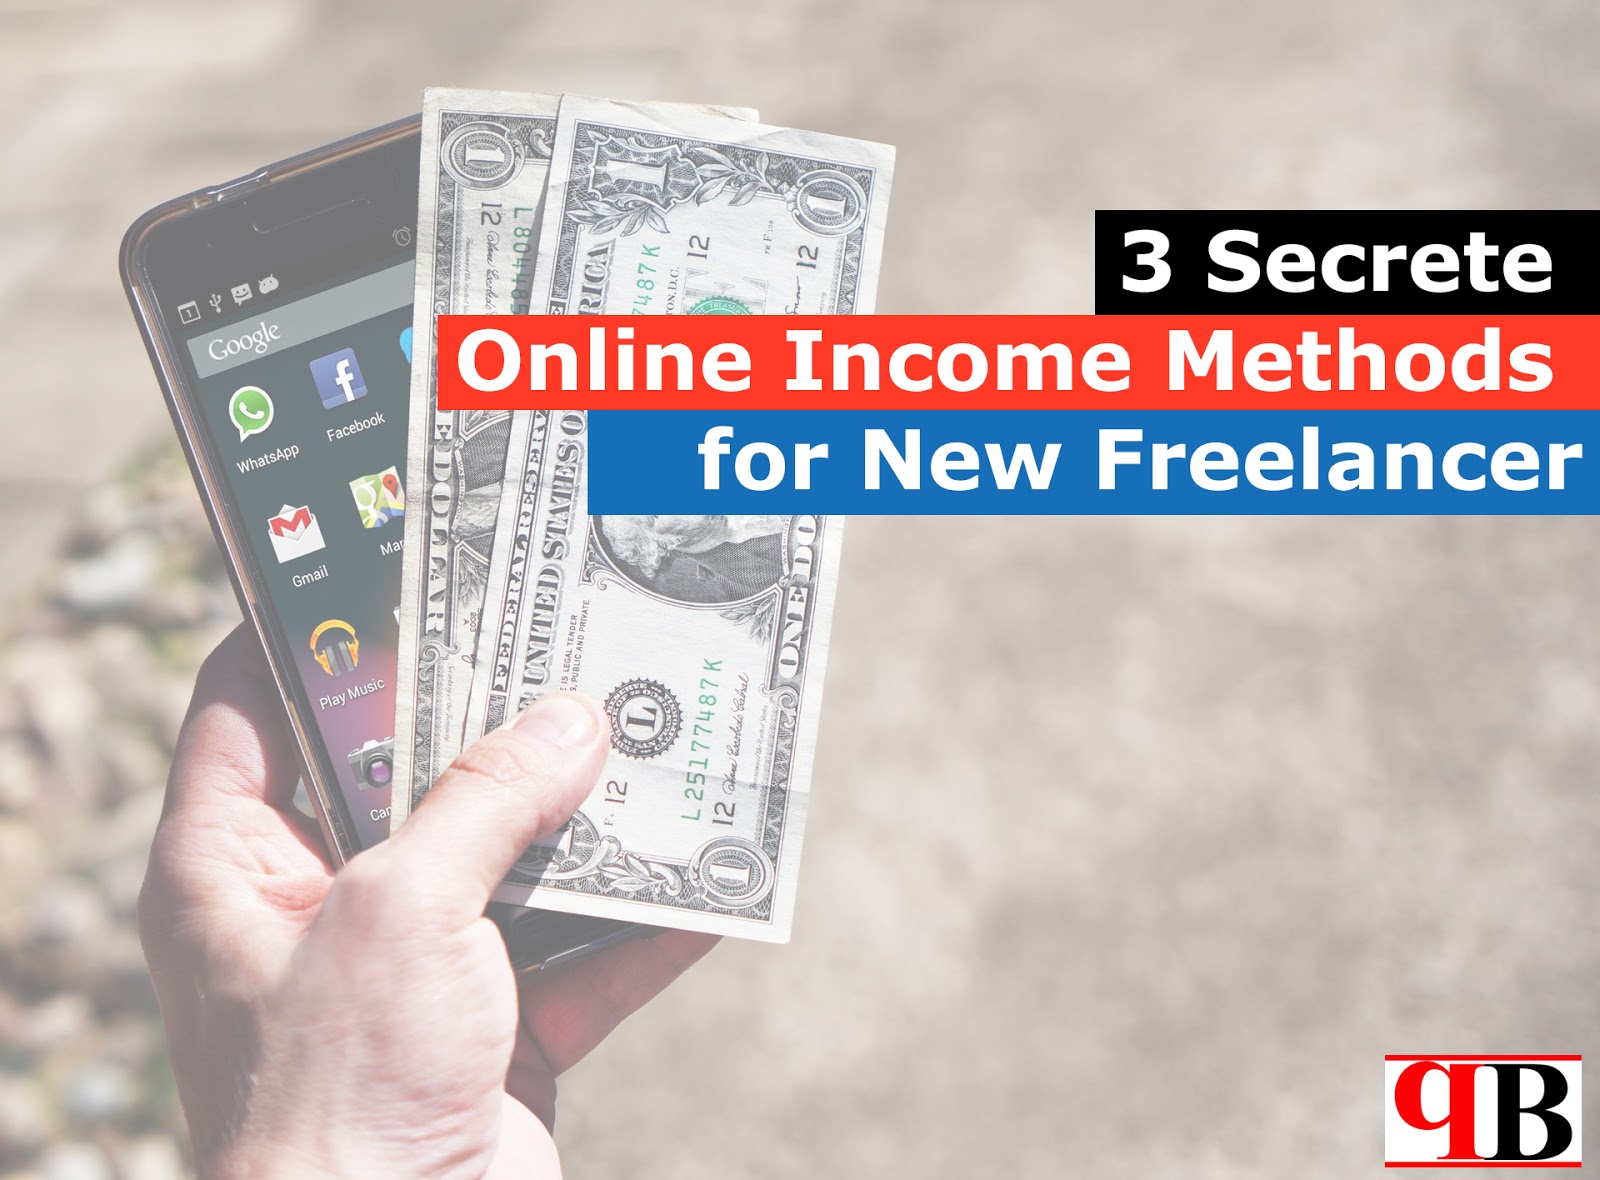 3 Secrete Online Income Methods for New Freelancer